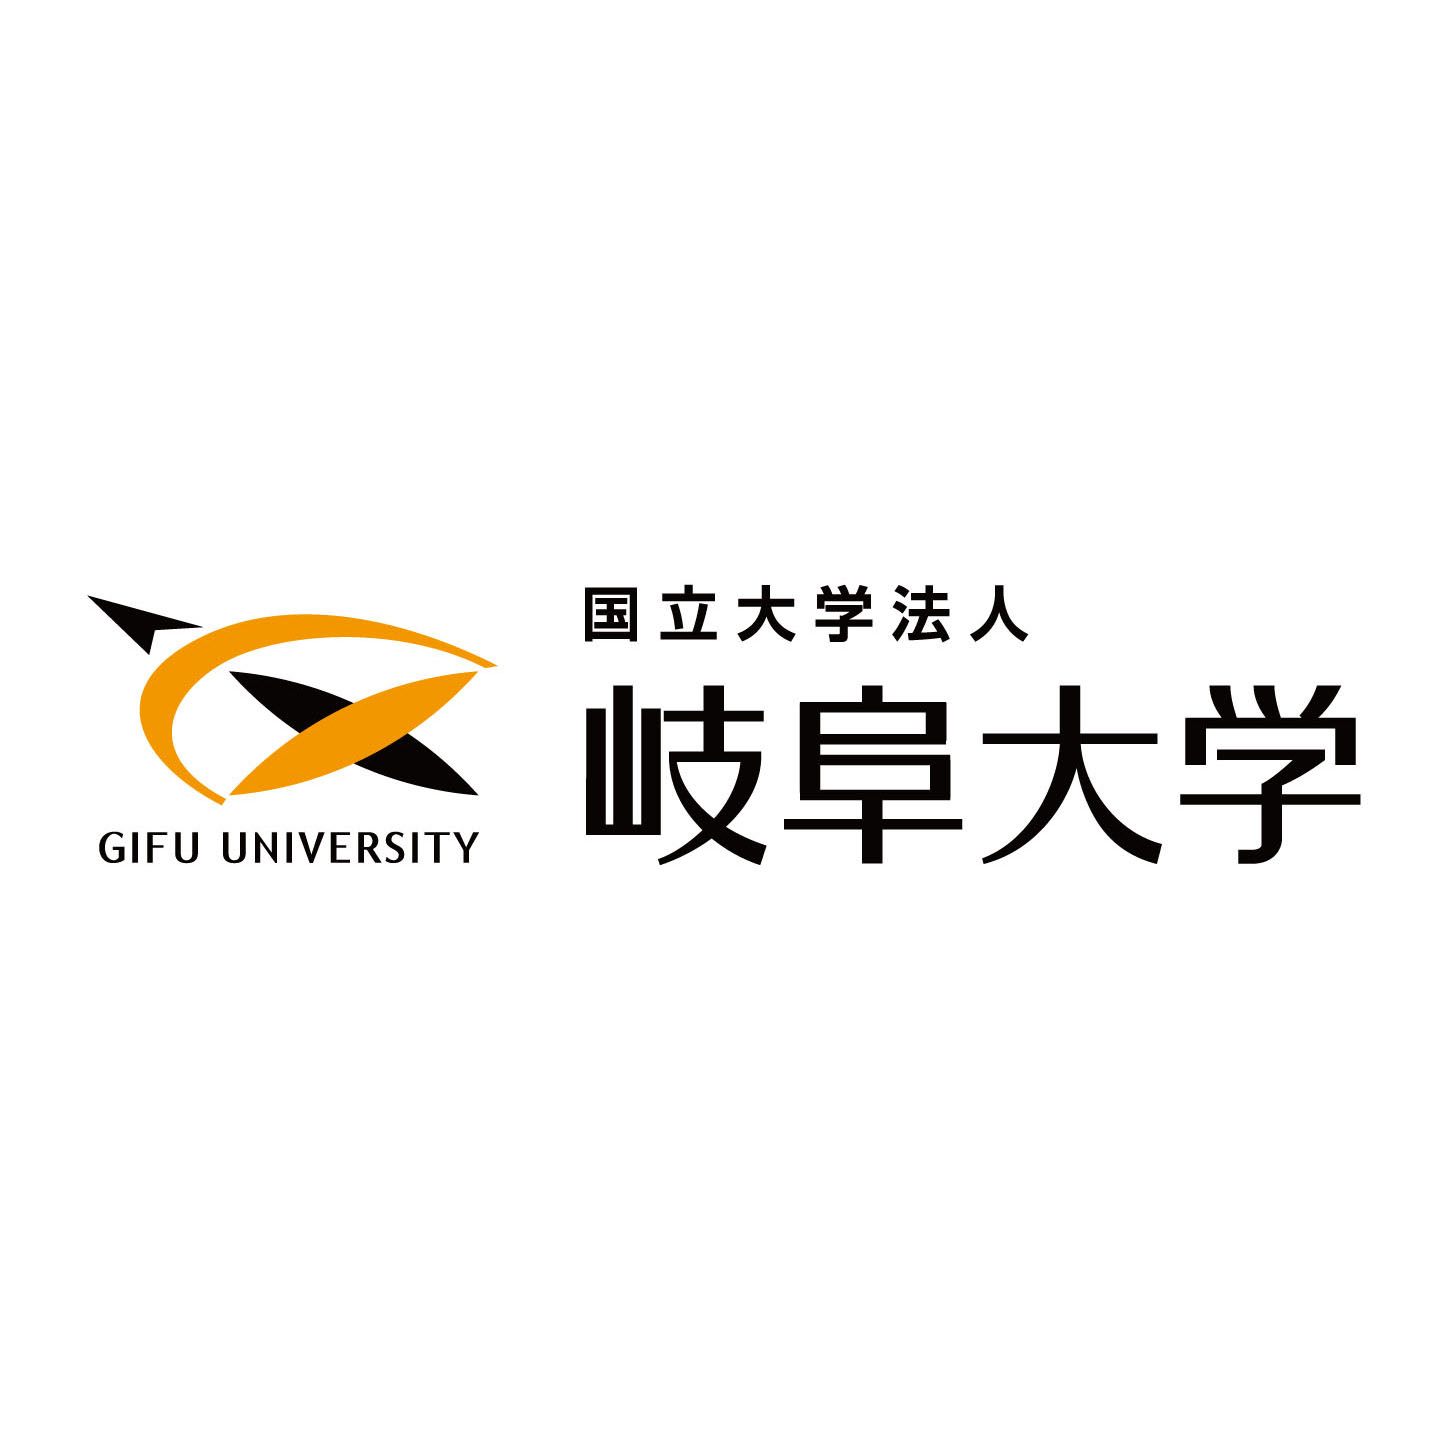 Gifu University